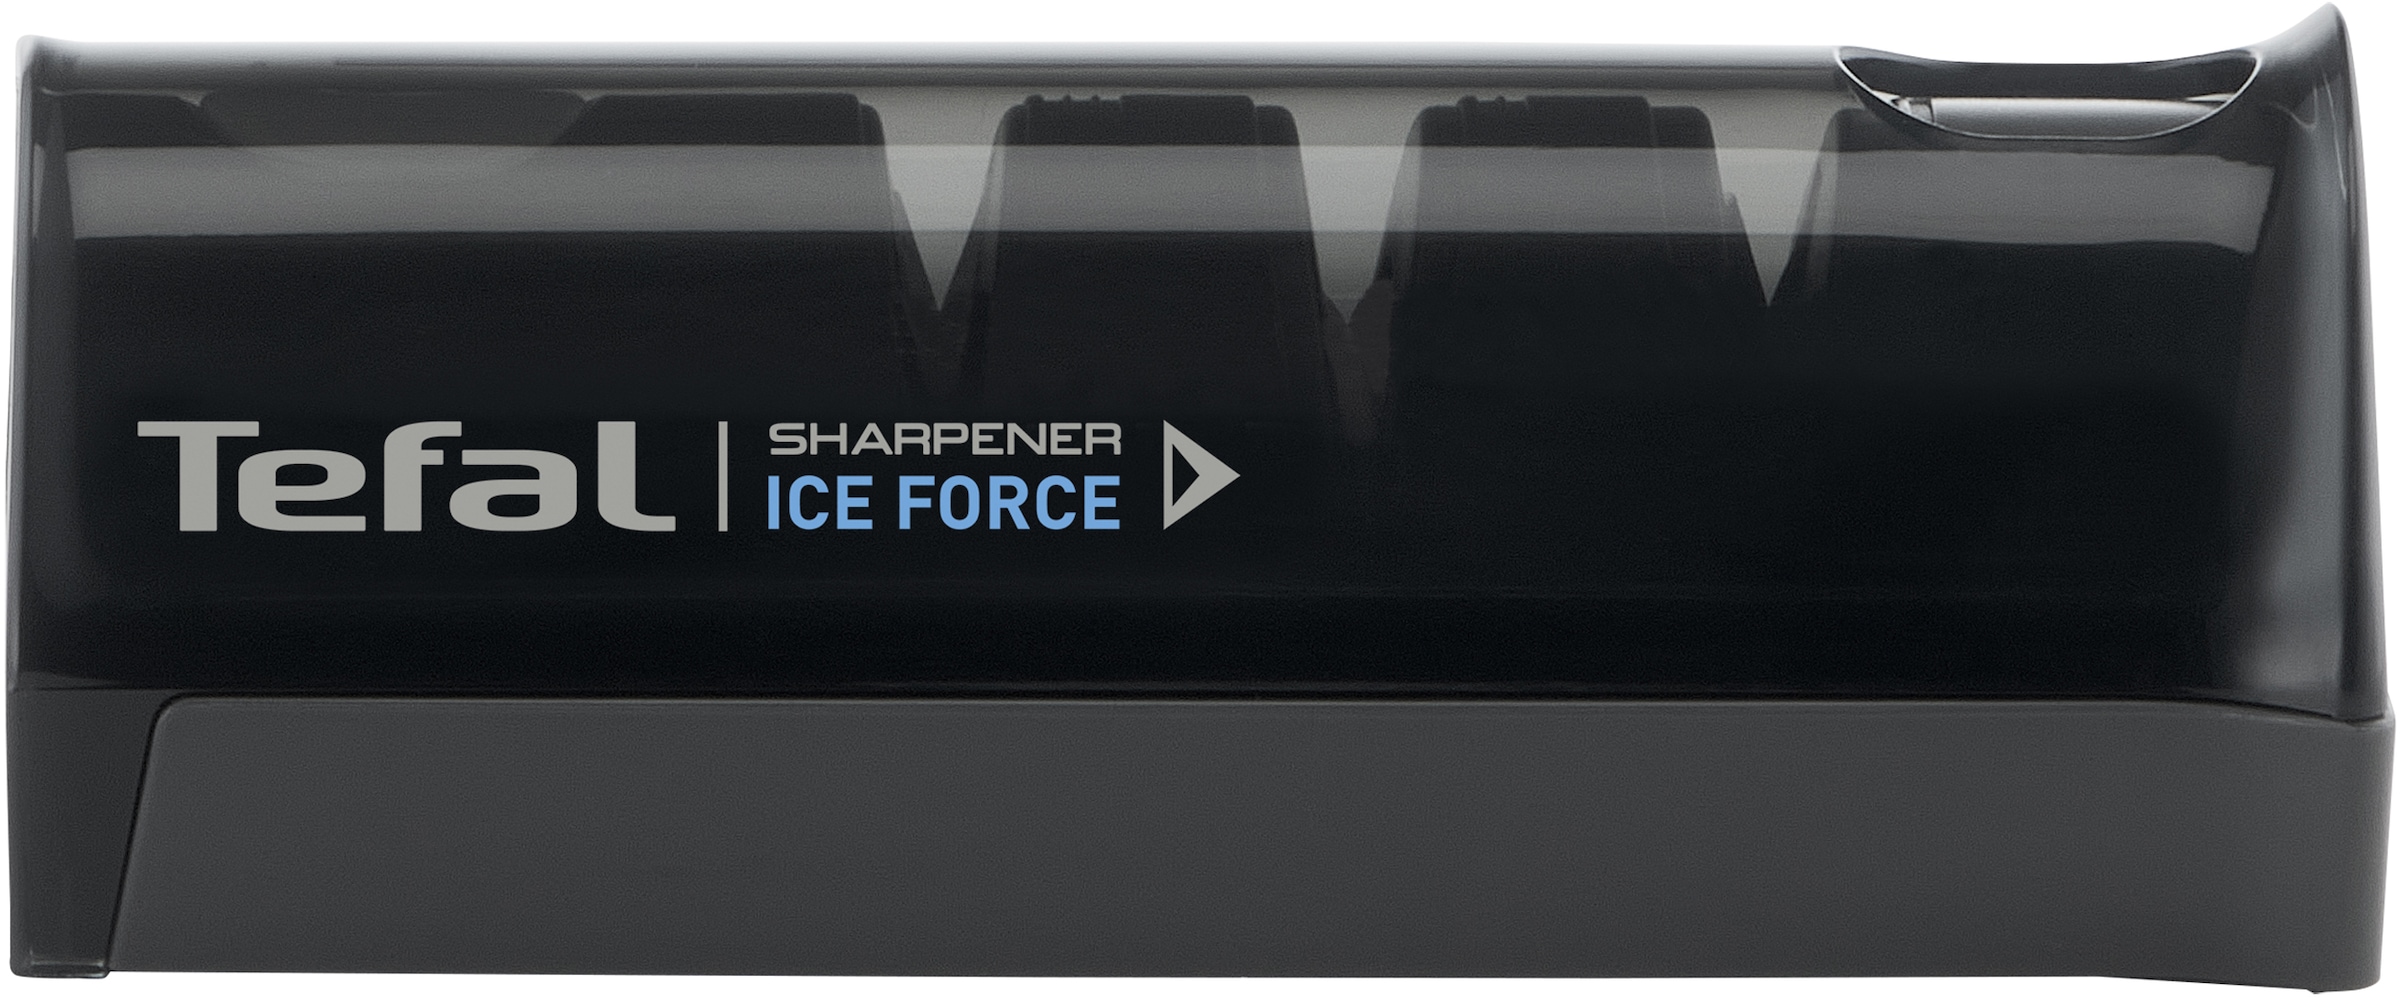 Messerschärfer »Ice Force«, (1), Schleifprozess(3Phasen), hochwertige japanische...